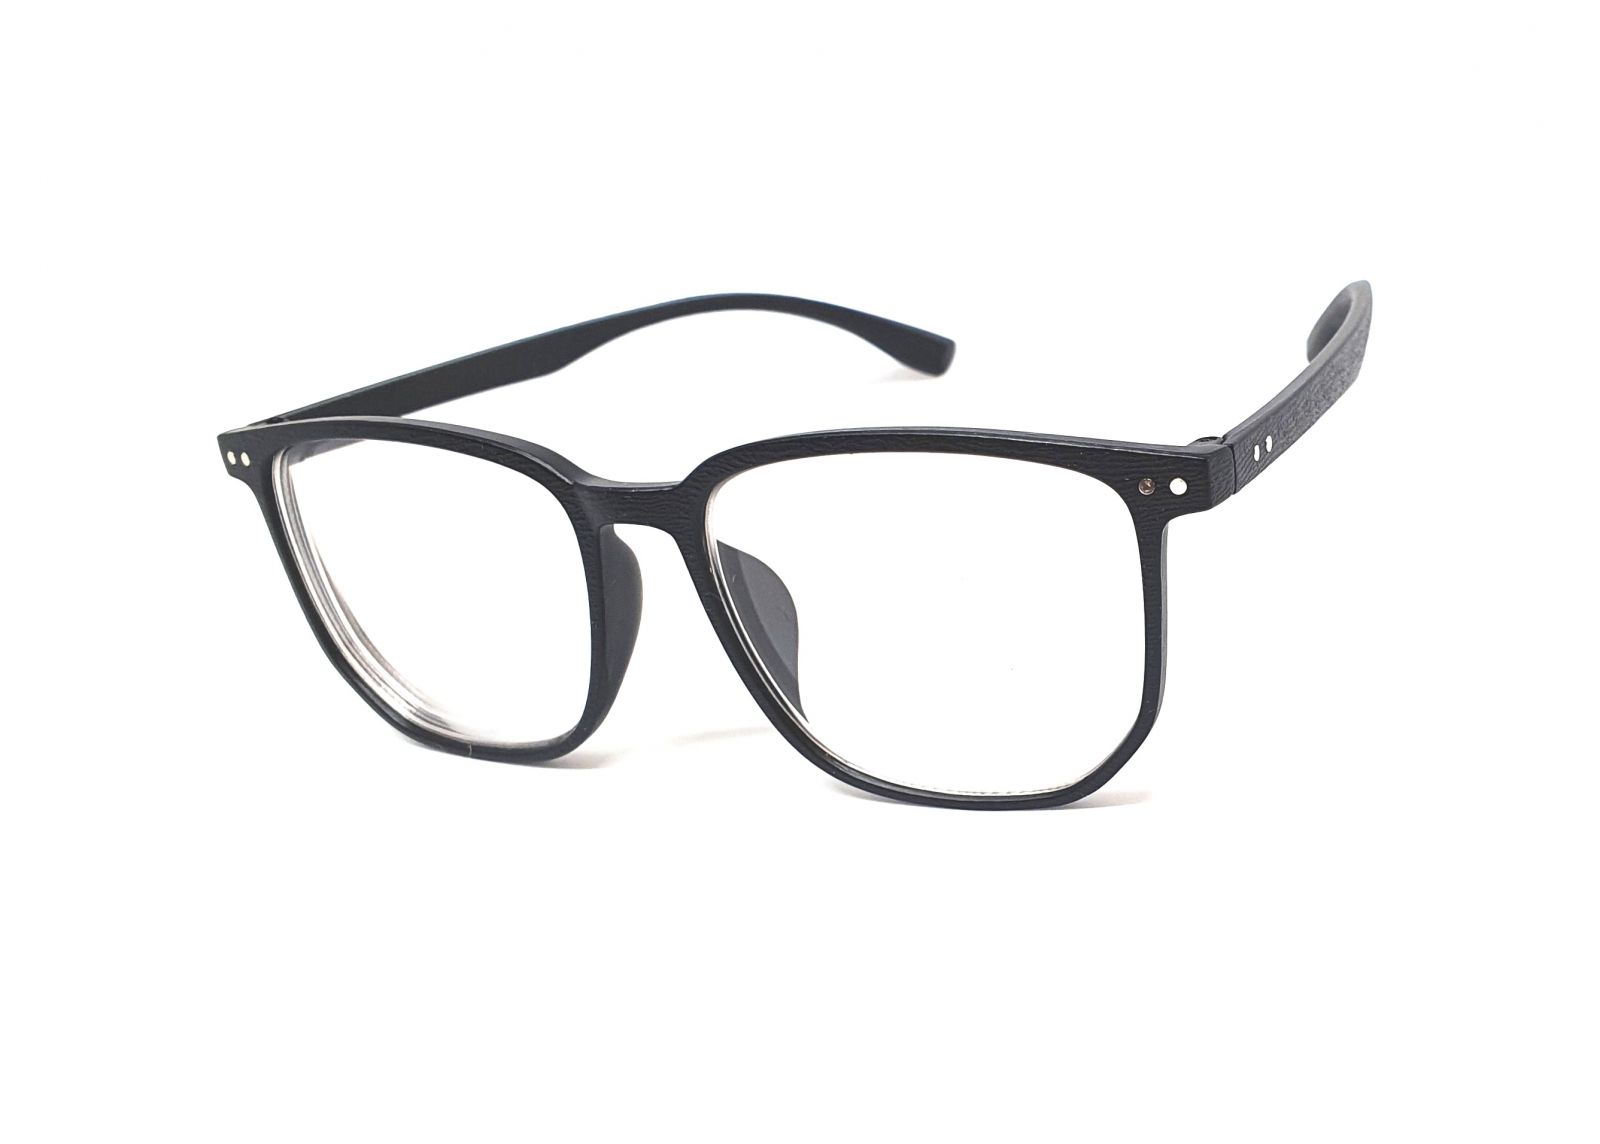 Samozabarvovací dioptrické brýle F23 / -4,50 black